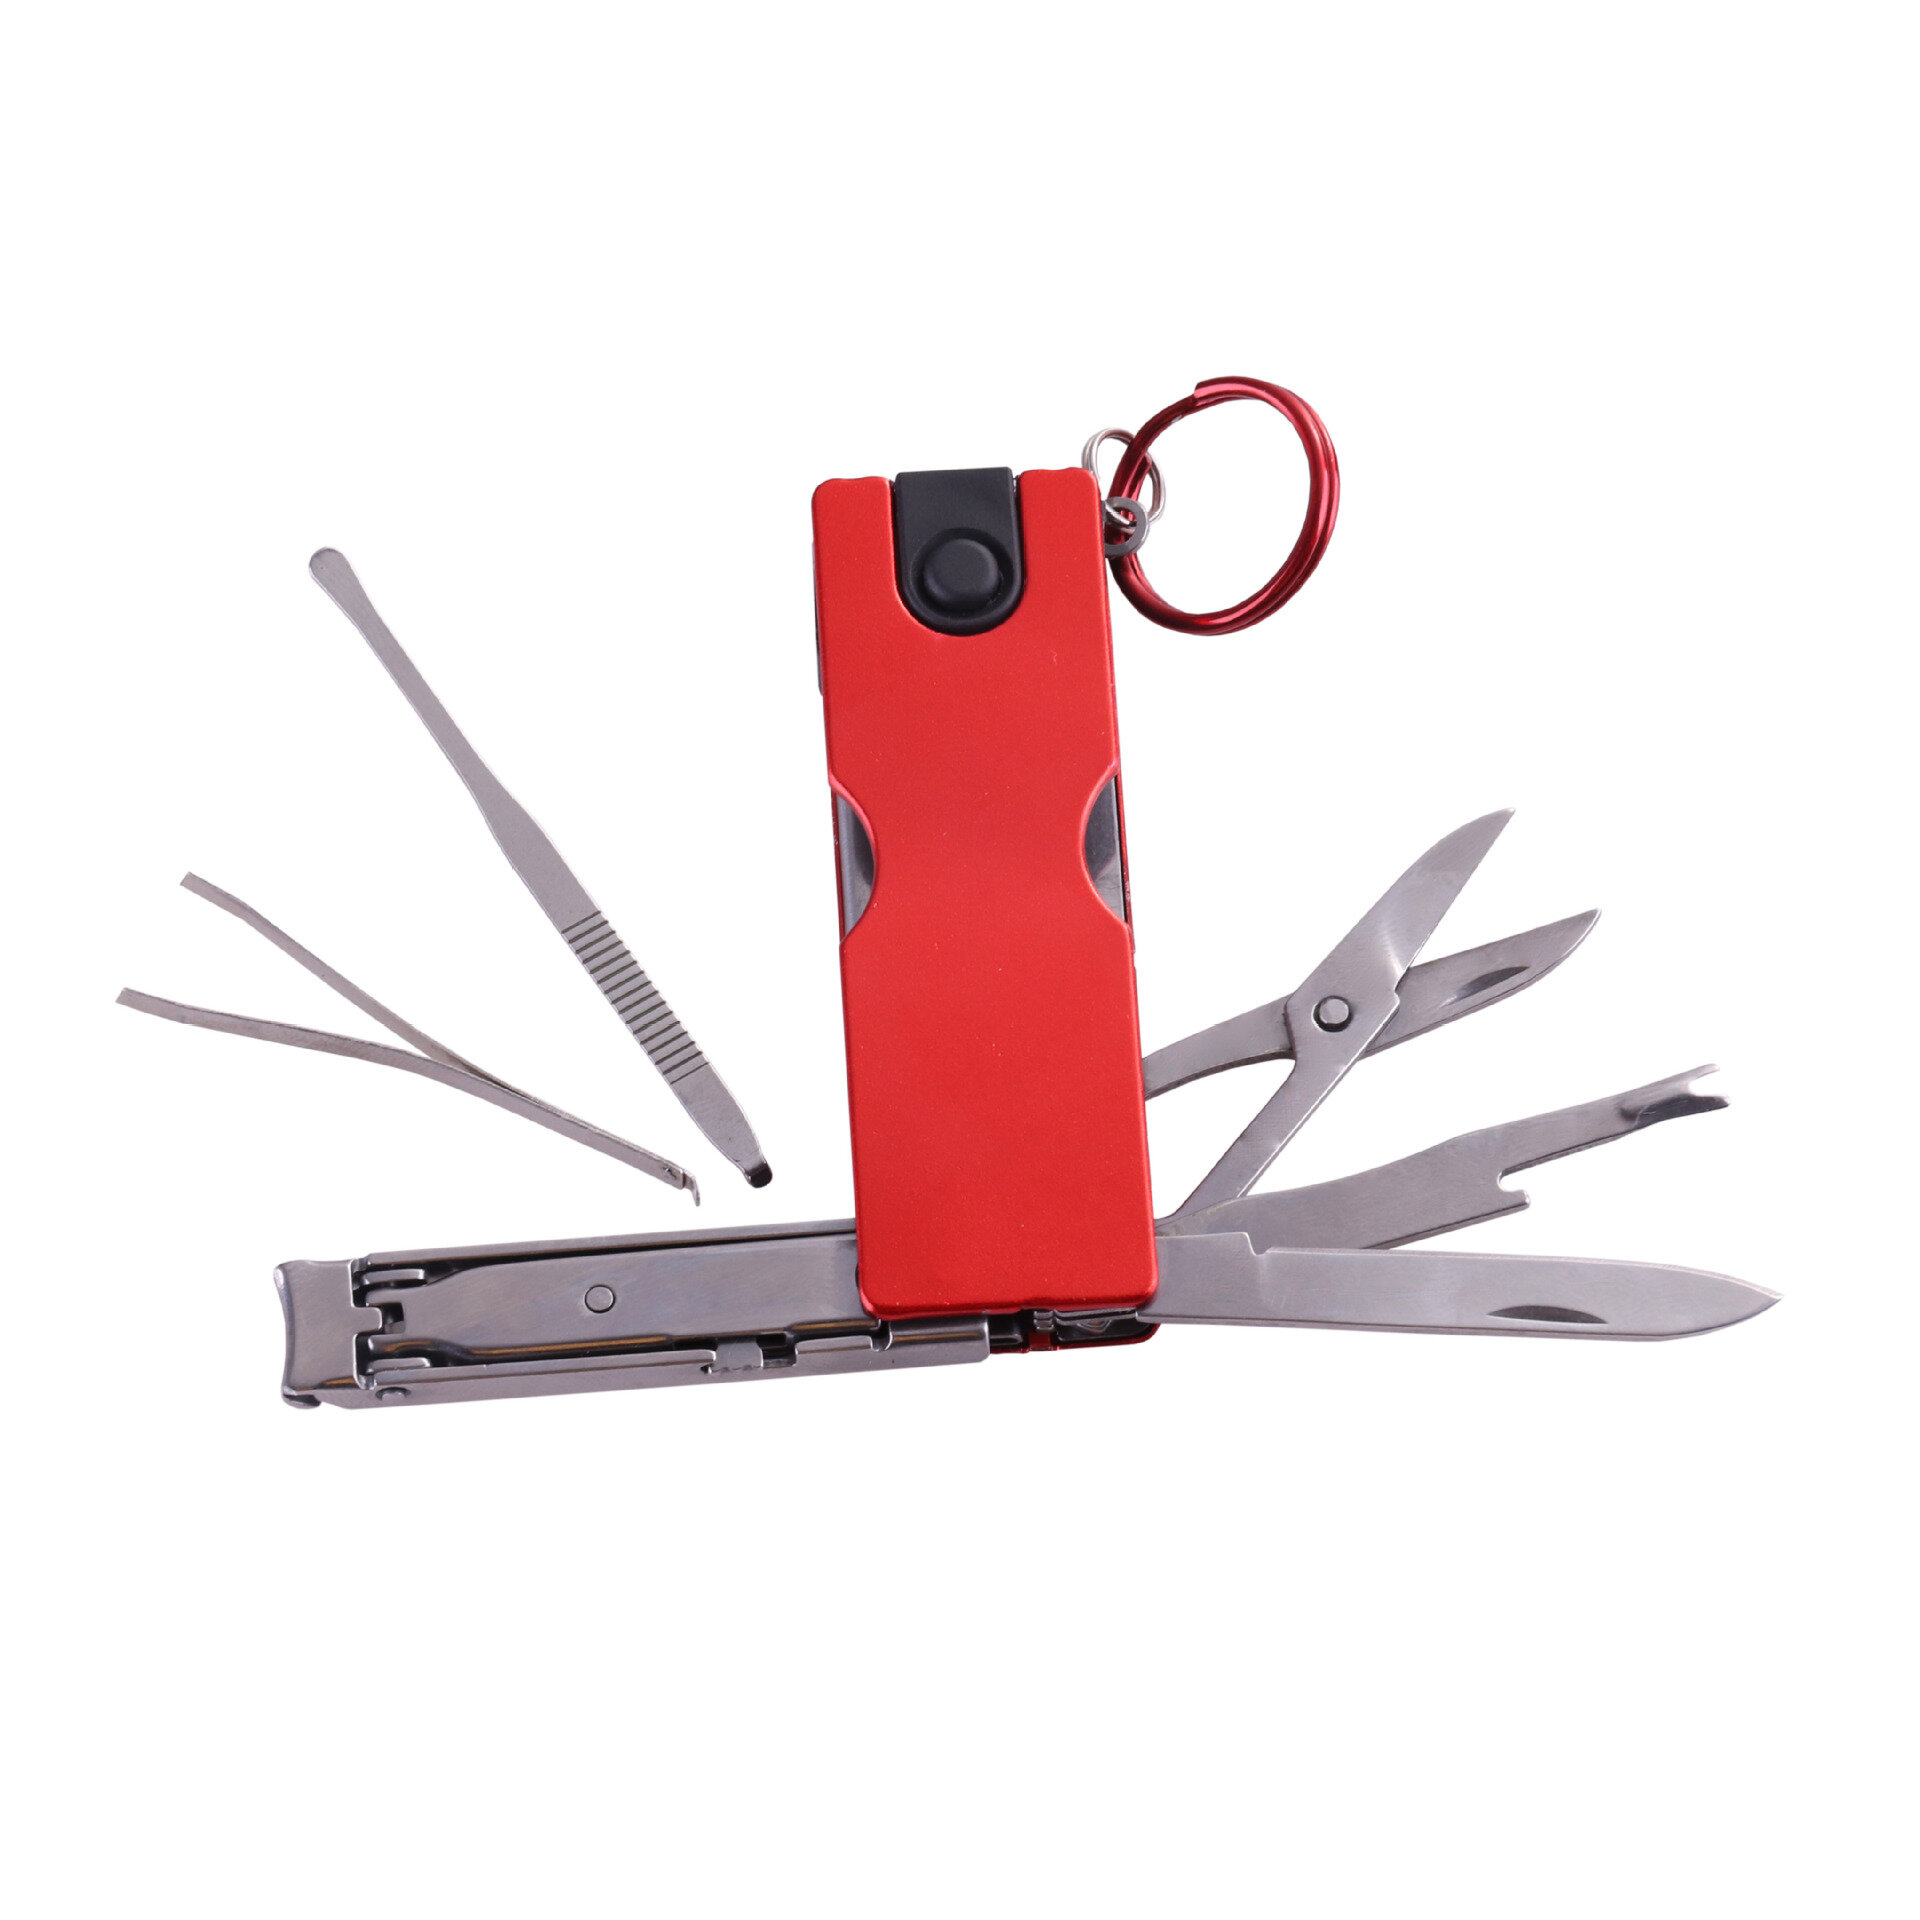 Opvouwbare nagelknipper schaar Outdoor draagbare multifunctionele gereedschappen Beauty Tool met LED-licht en sleutelring